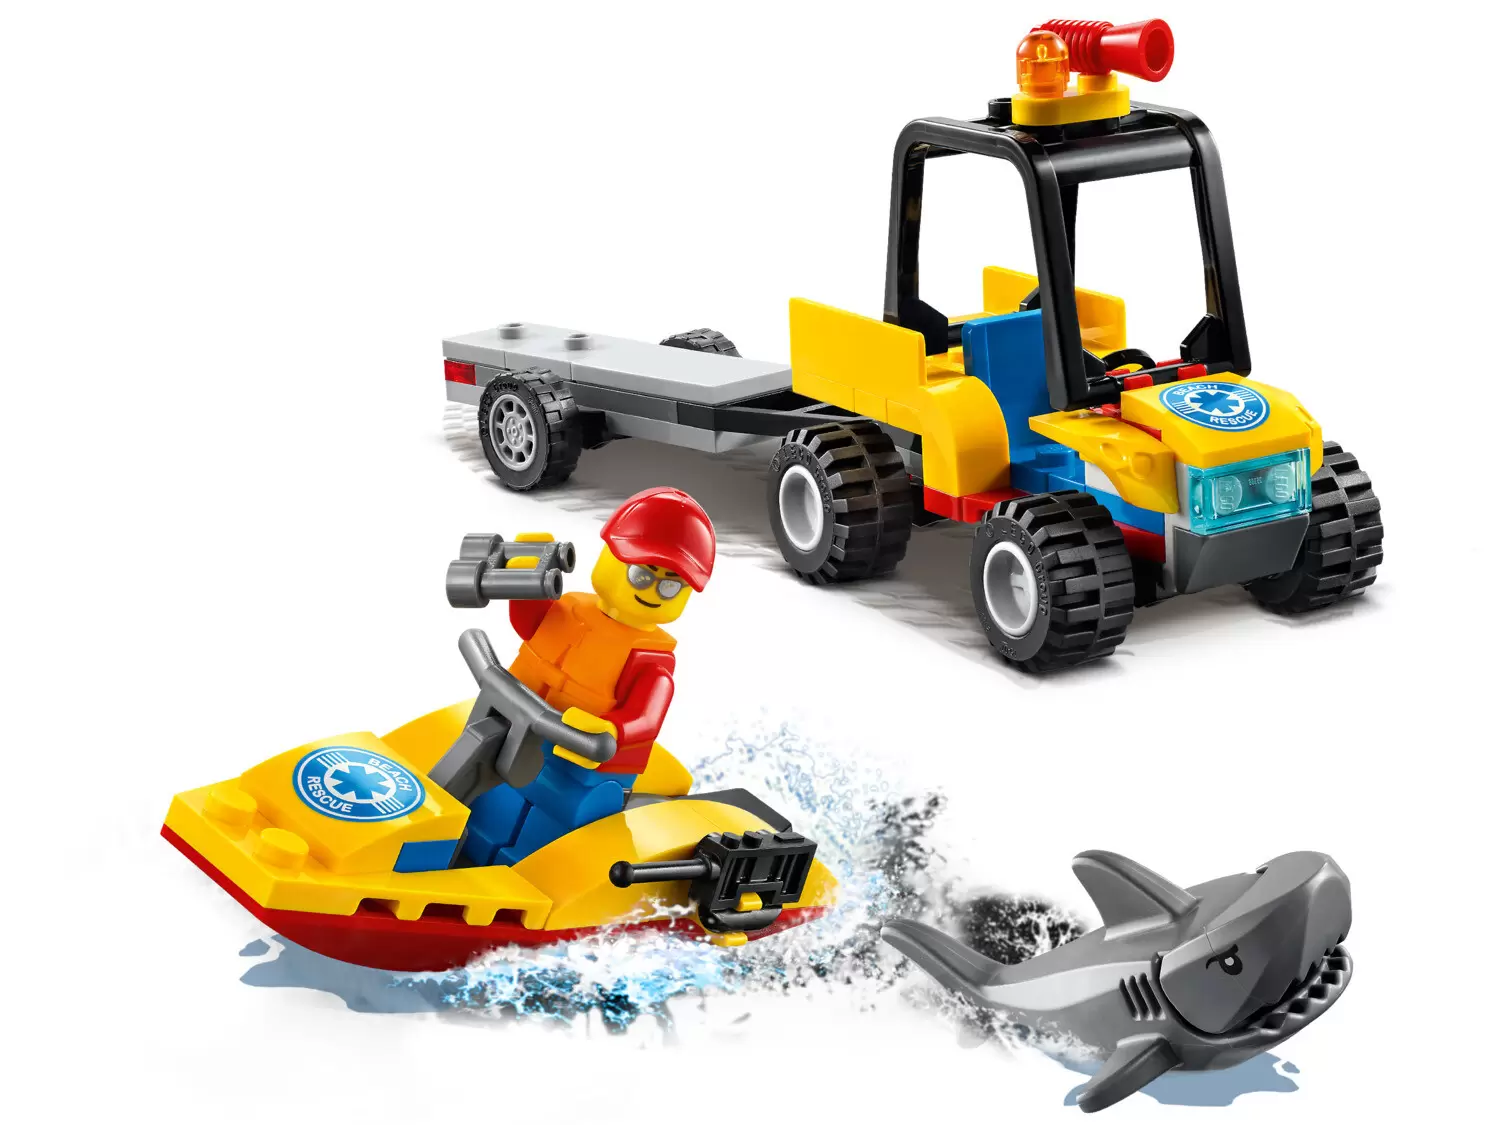 LEGO CITY - Beach Rescue ATV